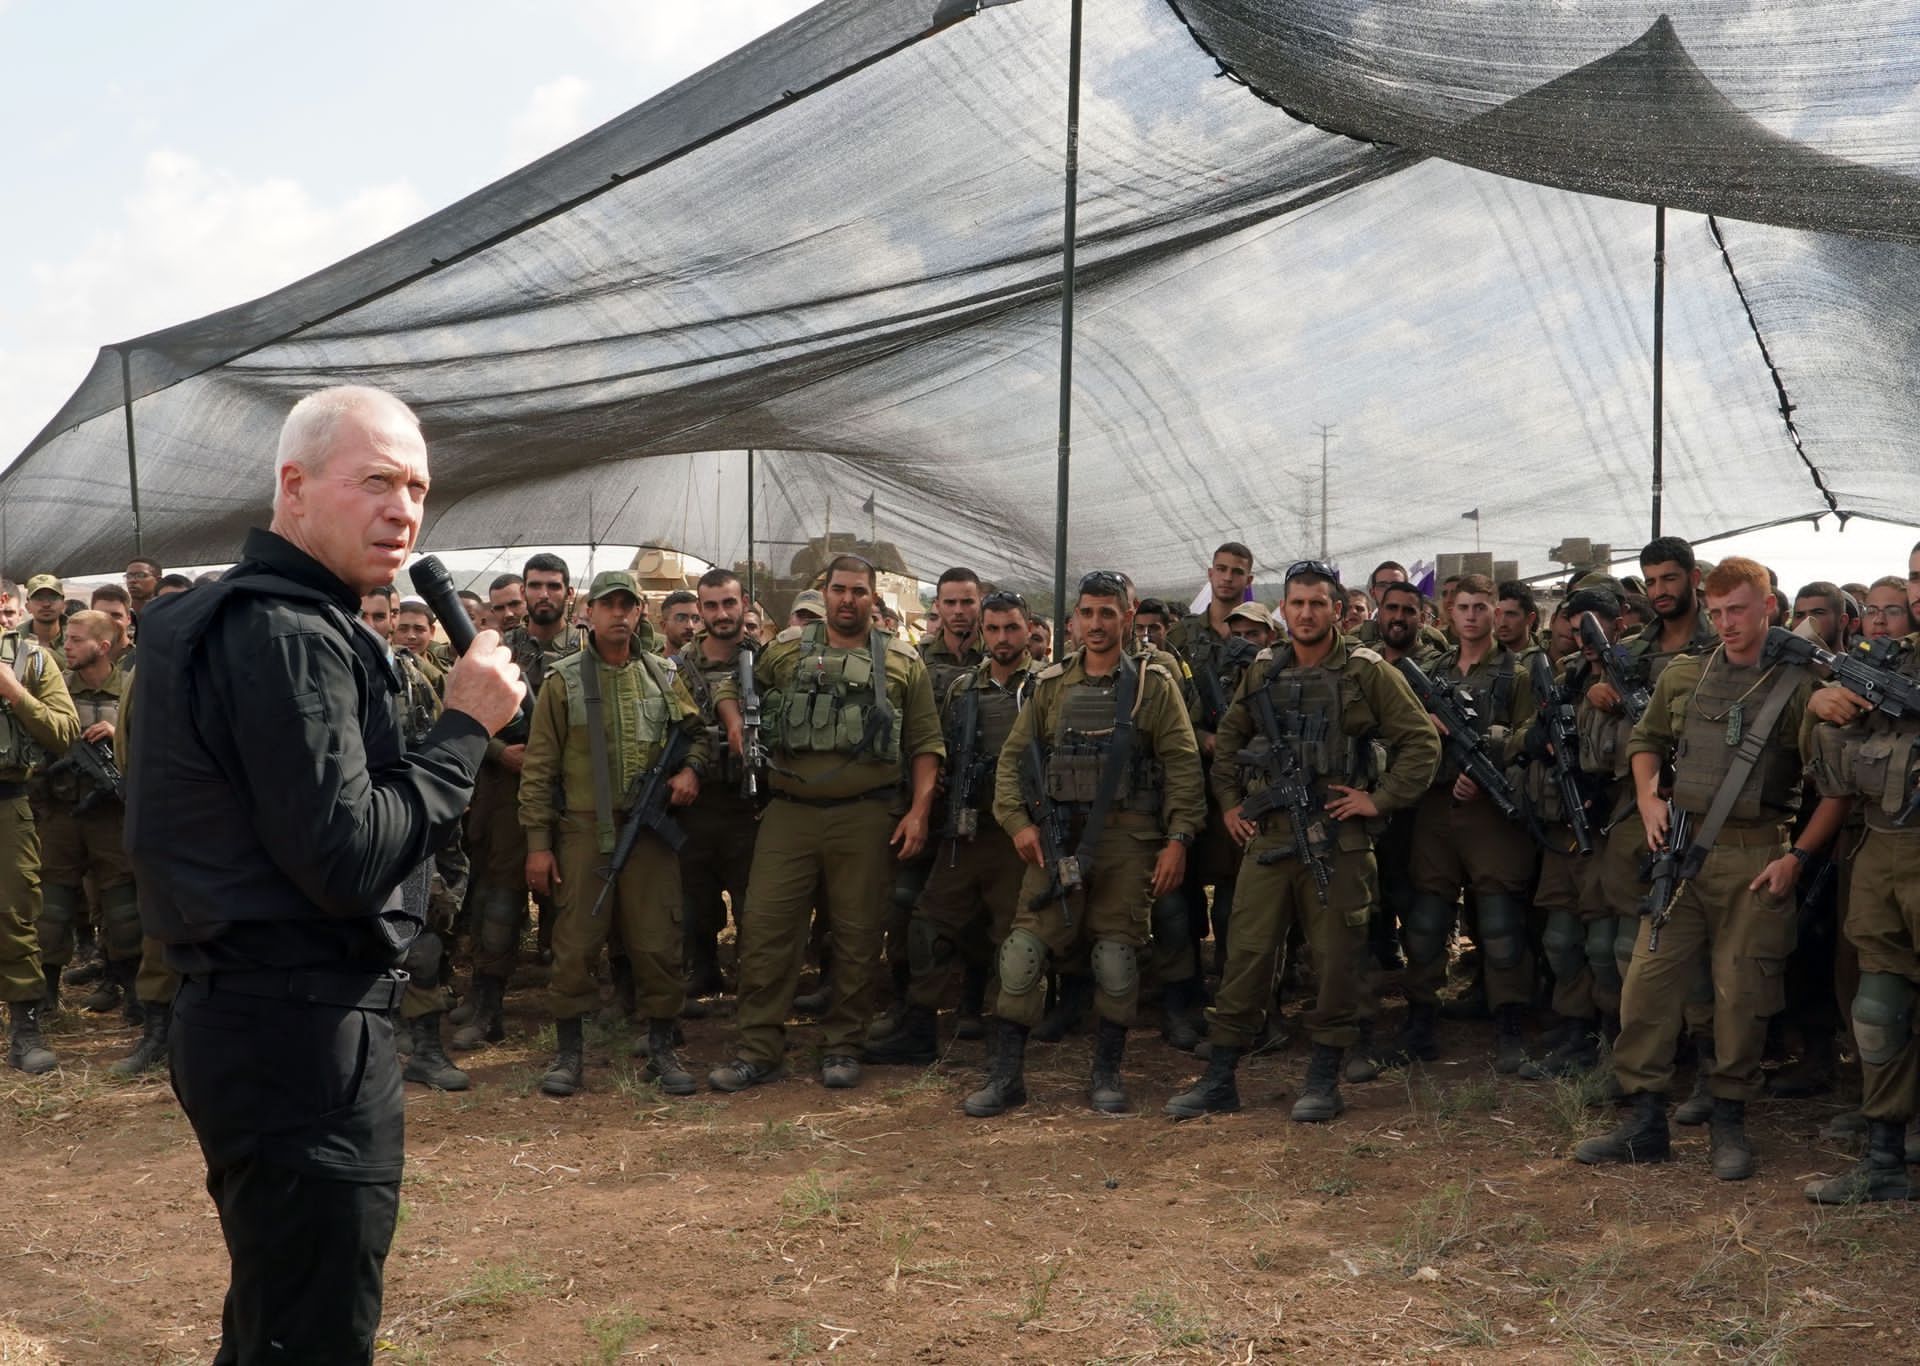 جندي إسرائيلي في غزة يهدد بتمرد عسكري والجيش يفتح تحقيقا | أخبار